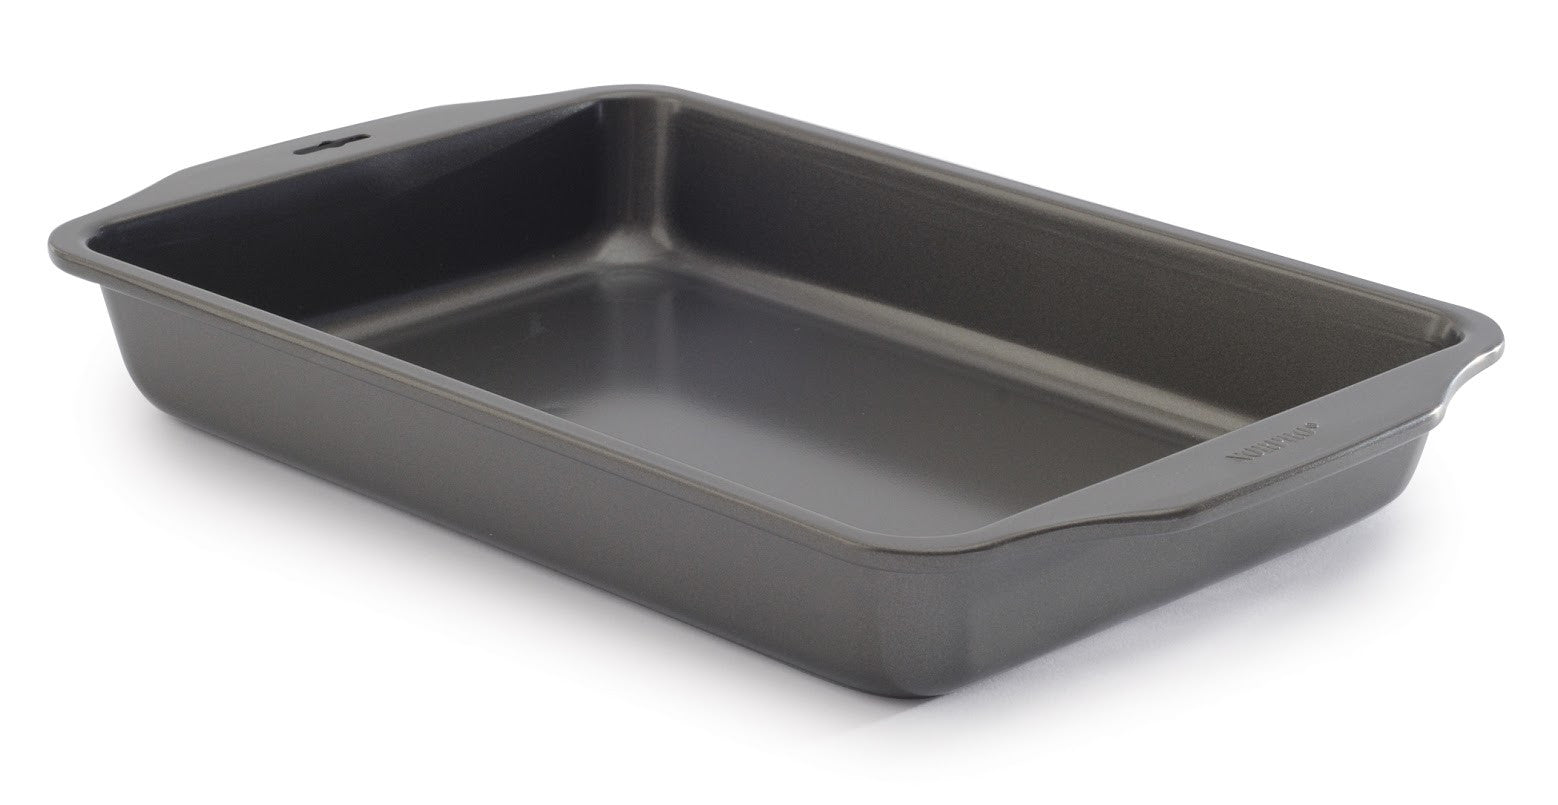 Non-stick Frying Pan, 3 Inches Deep, 9x13 Baking Pan, Rectangular